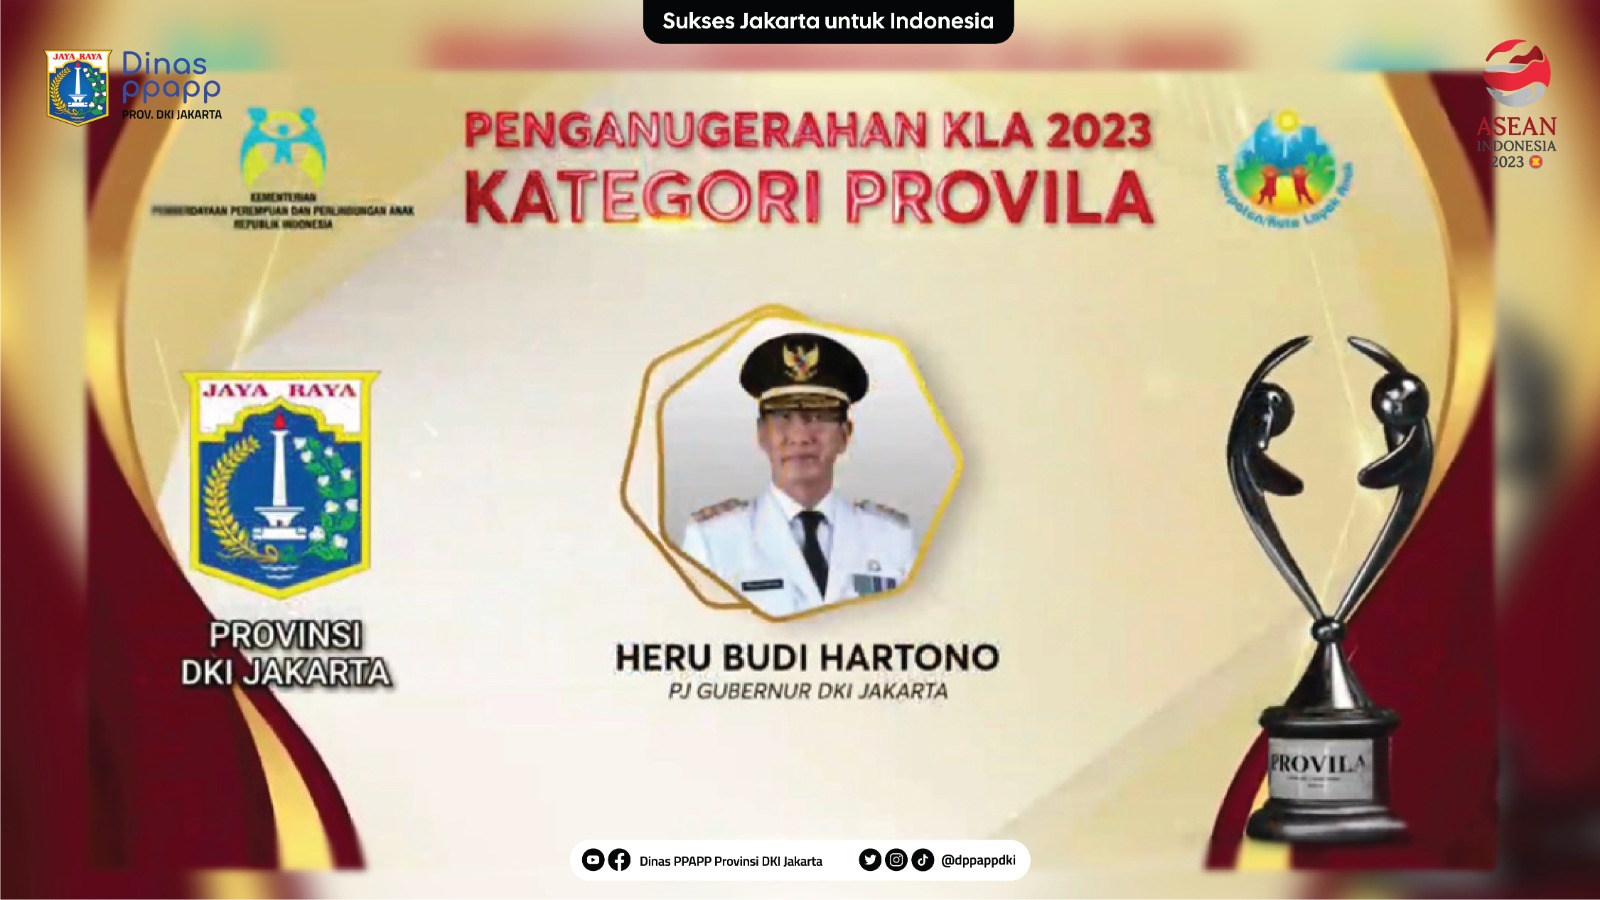 Pemerintah Provinsi DKI Jakarta Raih Kembali Penghargaan Sebagai "Provinsi Layak Anak" (PROVILA)